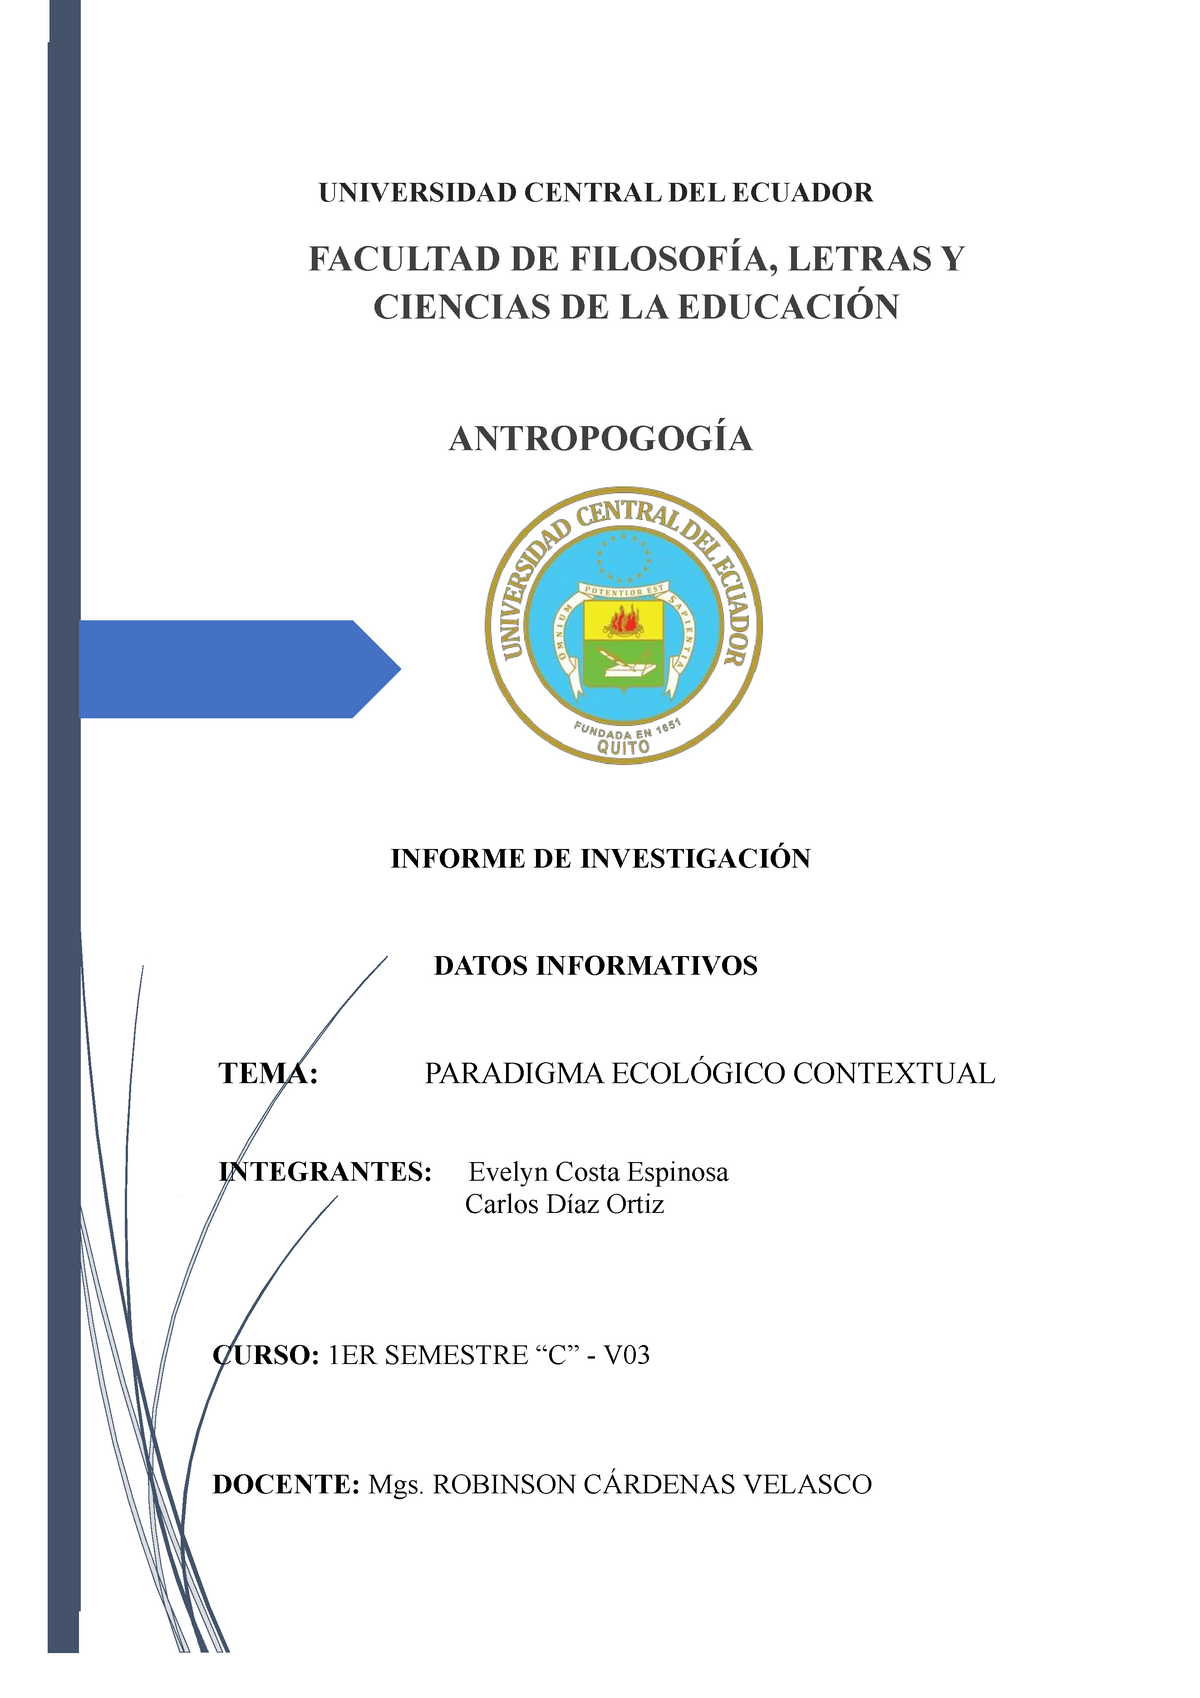 Paradigma Ecológico Contextual - UNIVERSIDAD CENTRAL DEL ECUADOR FACULTAD  DE FILOSOFÍA, LETRAS Y - Studocu